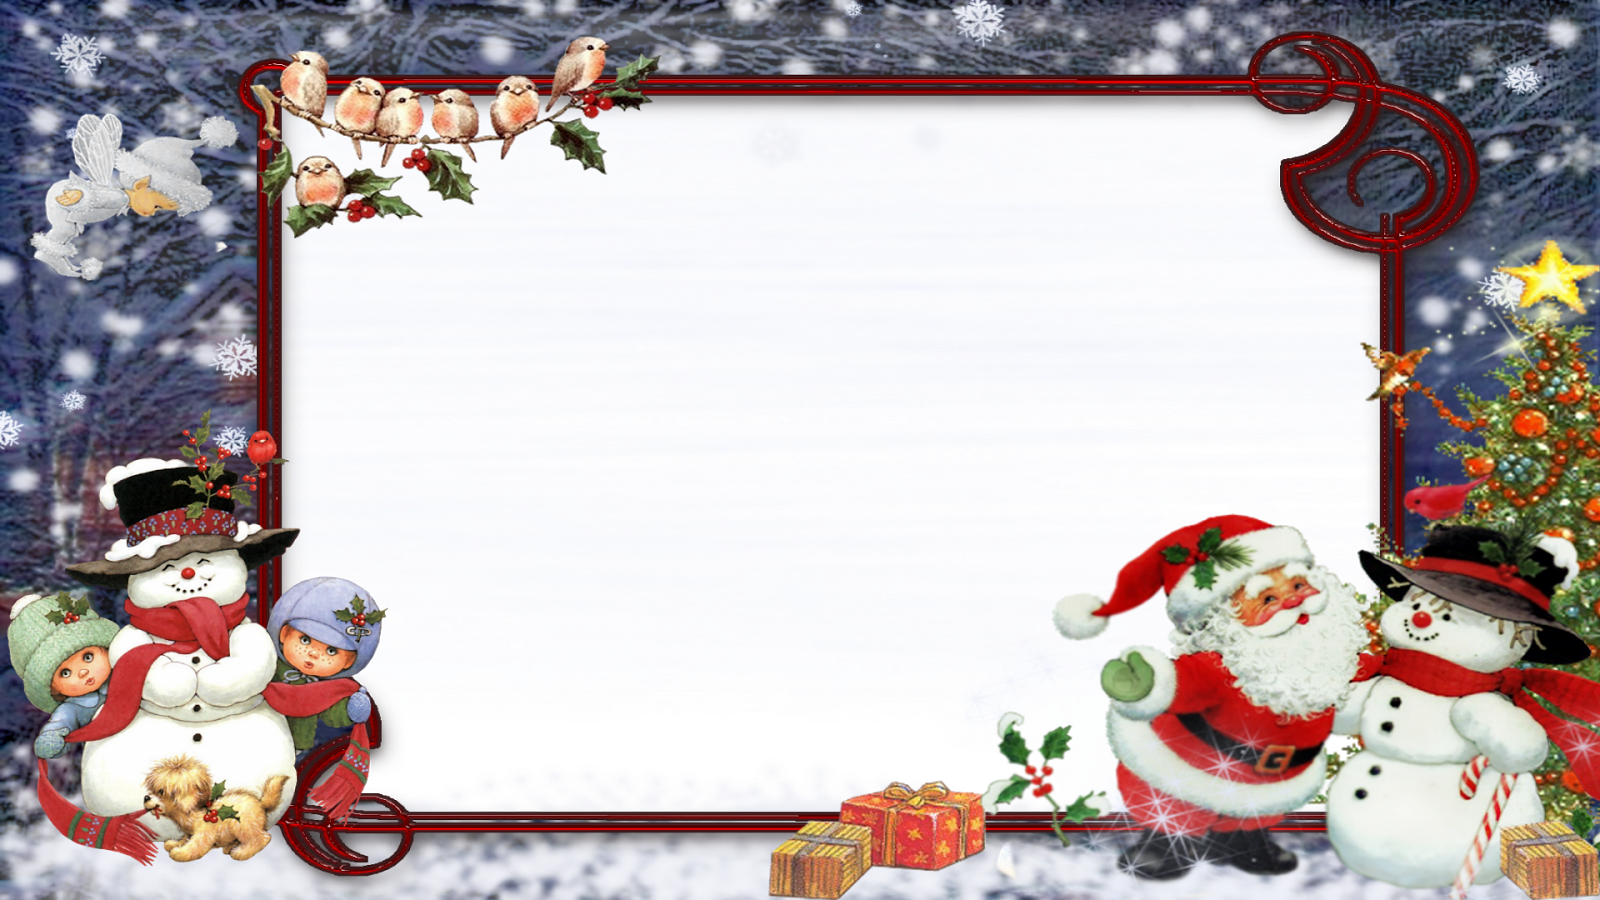 Moldura Natal E Png - Marcos De Fotos De Navidad (1600x900), Png Download